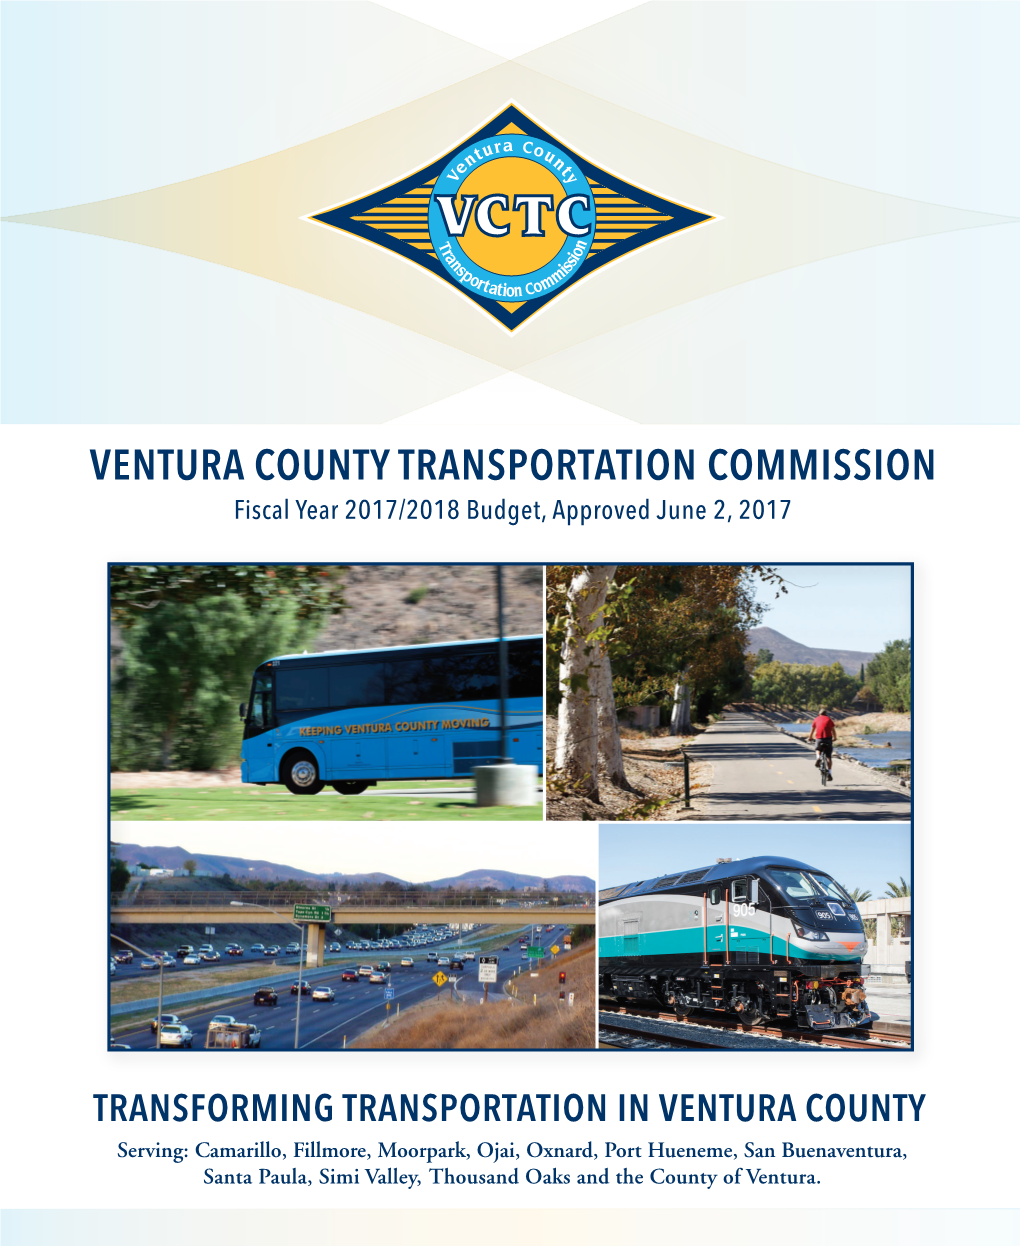 Transforming Transportation in Ventura County